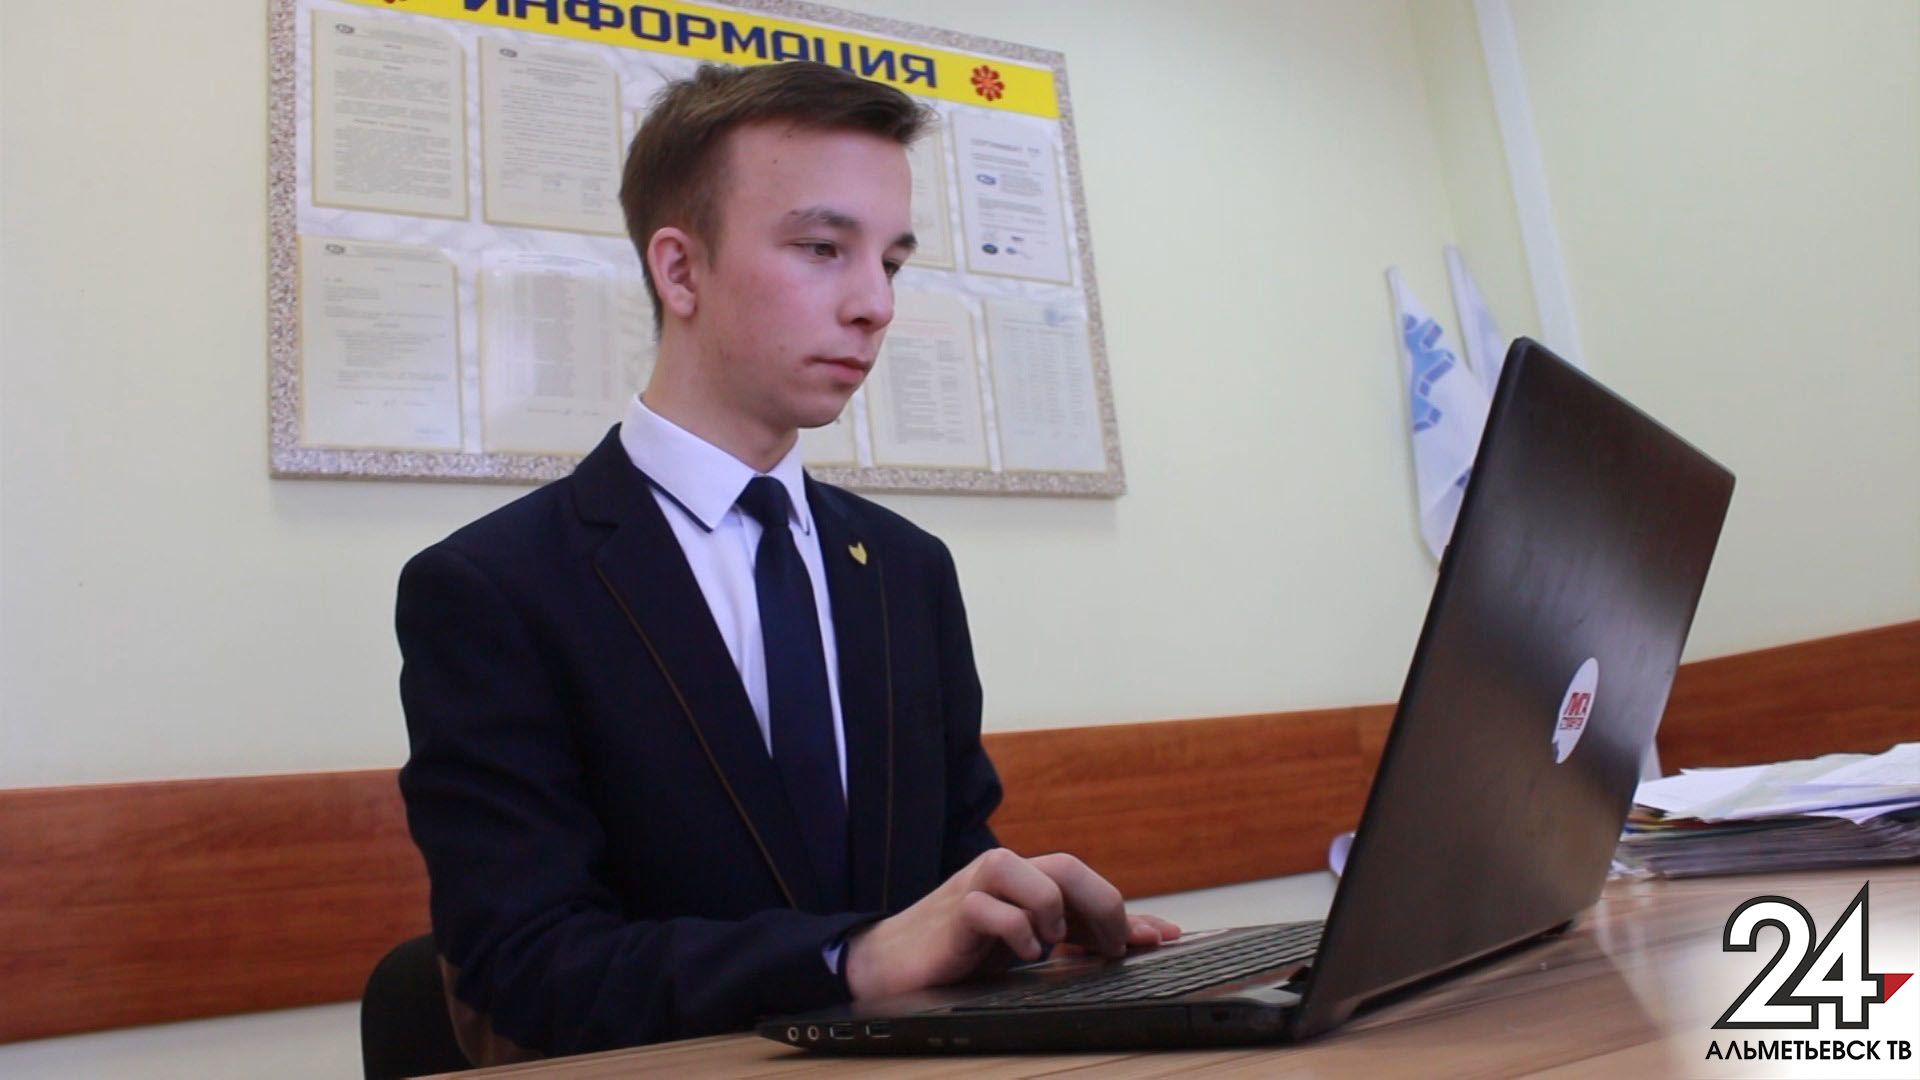 Студент, создавший компьютерную игру про Альметьевск, едет на стажировку в Европу